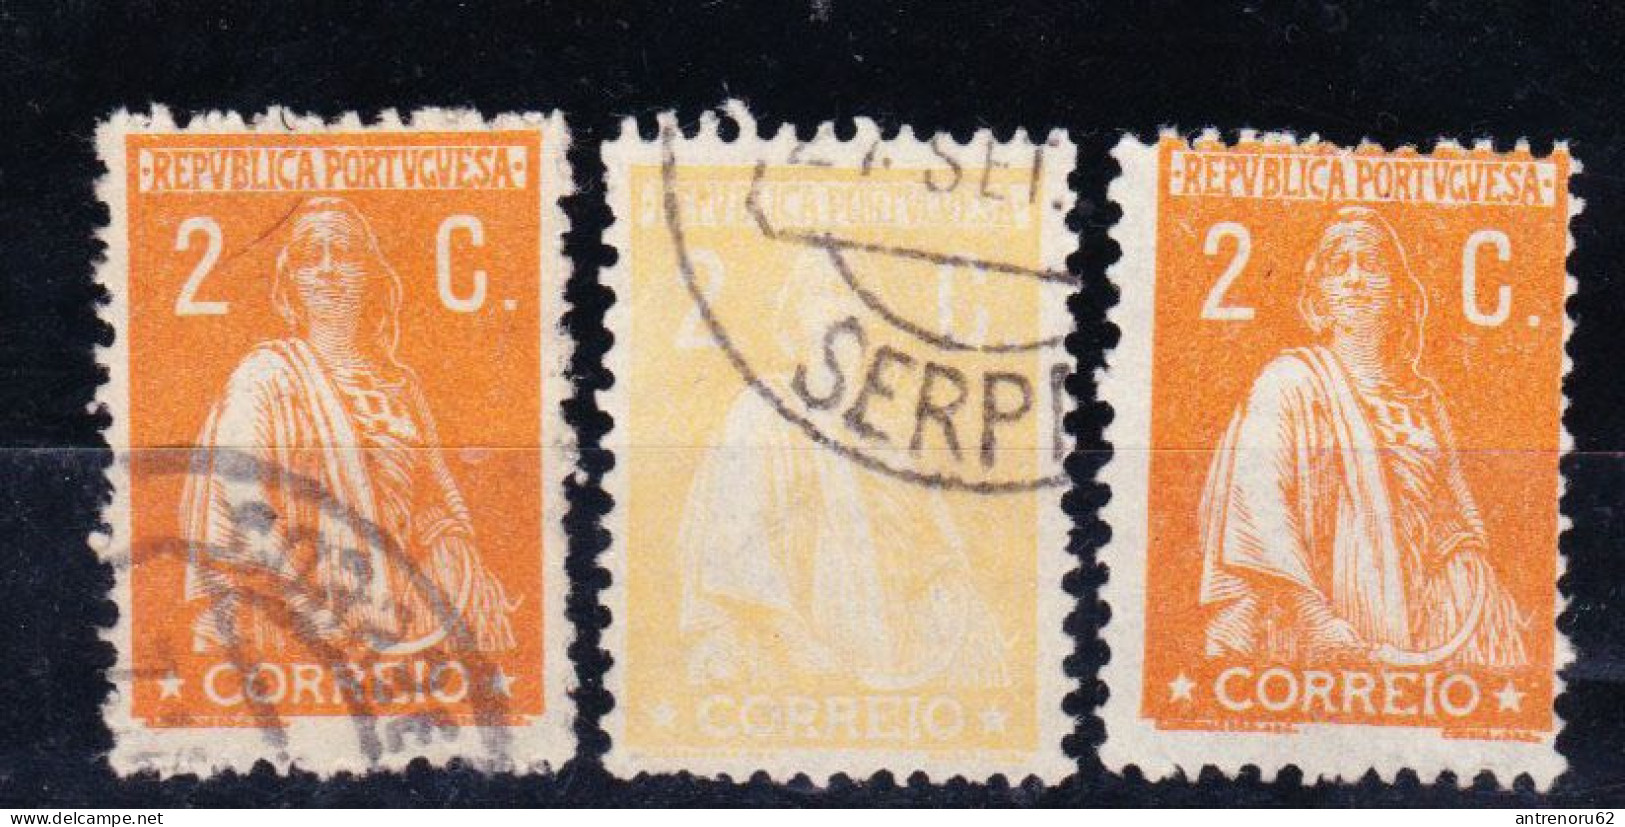 STAMPS-1917-PORTUGAL-ERROR-USED(NORMAL IS ORANGE)-SEE-SCAN - Ongebruikt